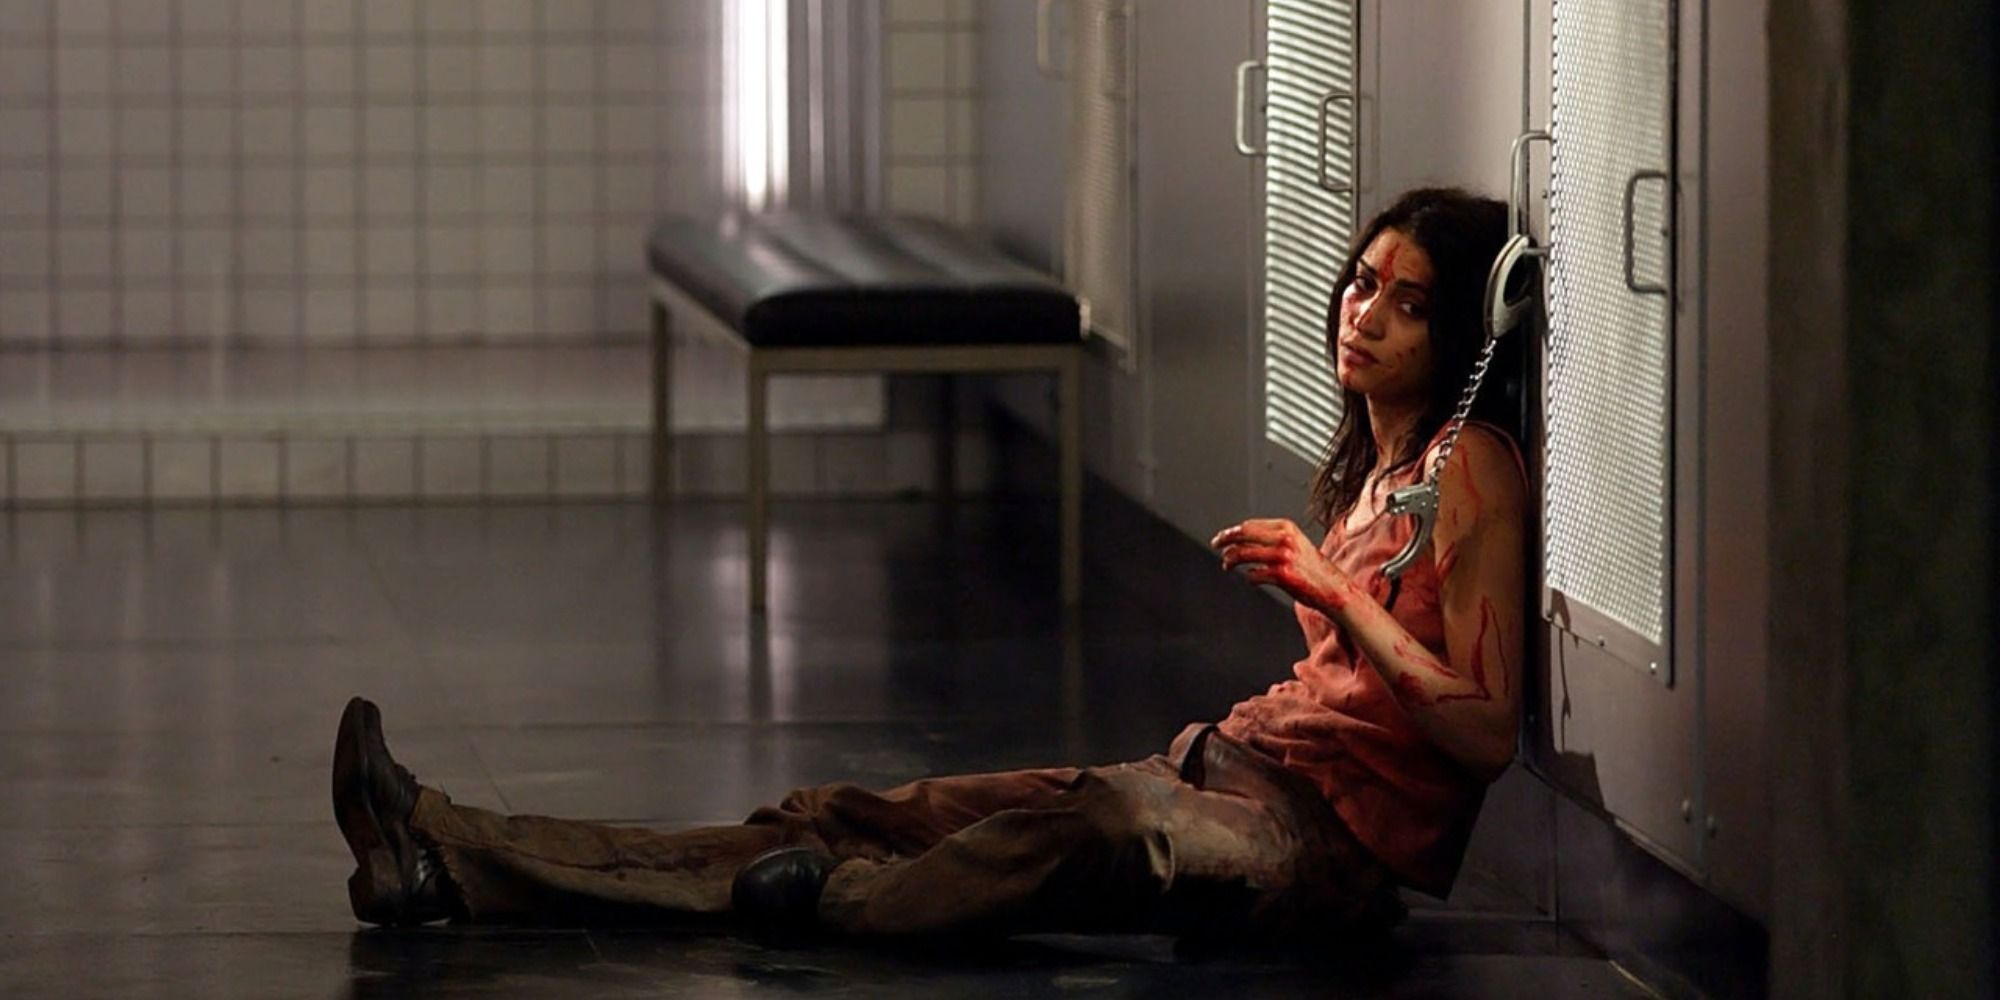 Morjana Alaoui sits handcuffed to a door